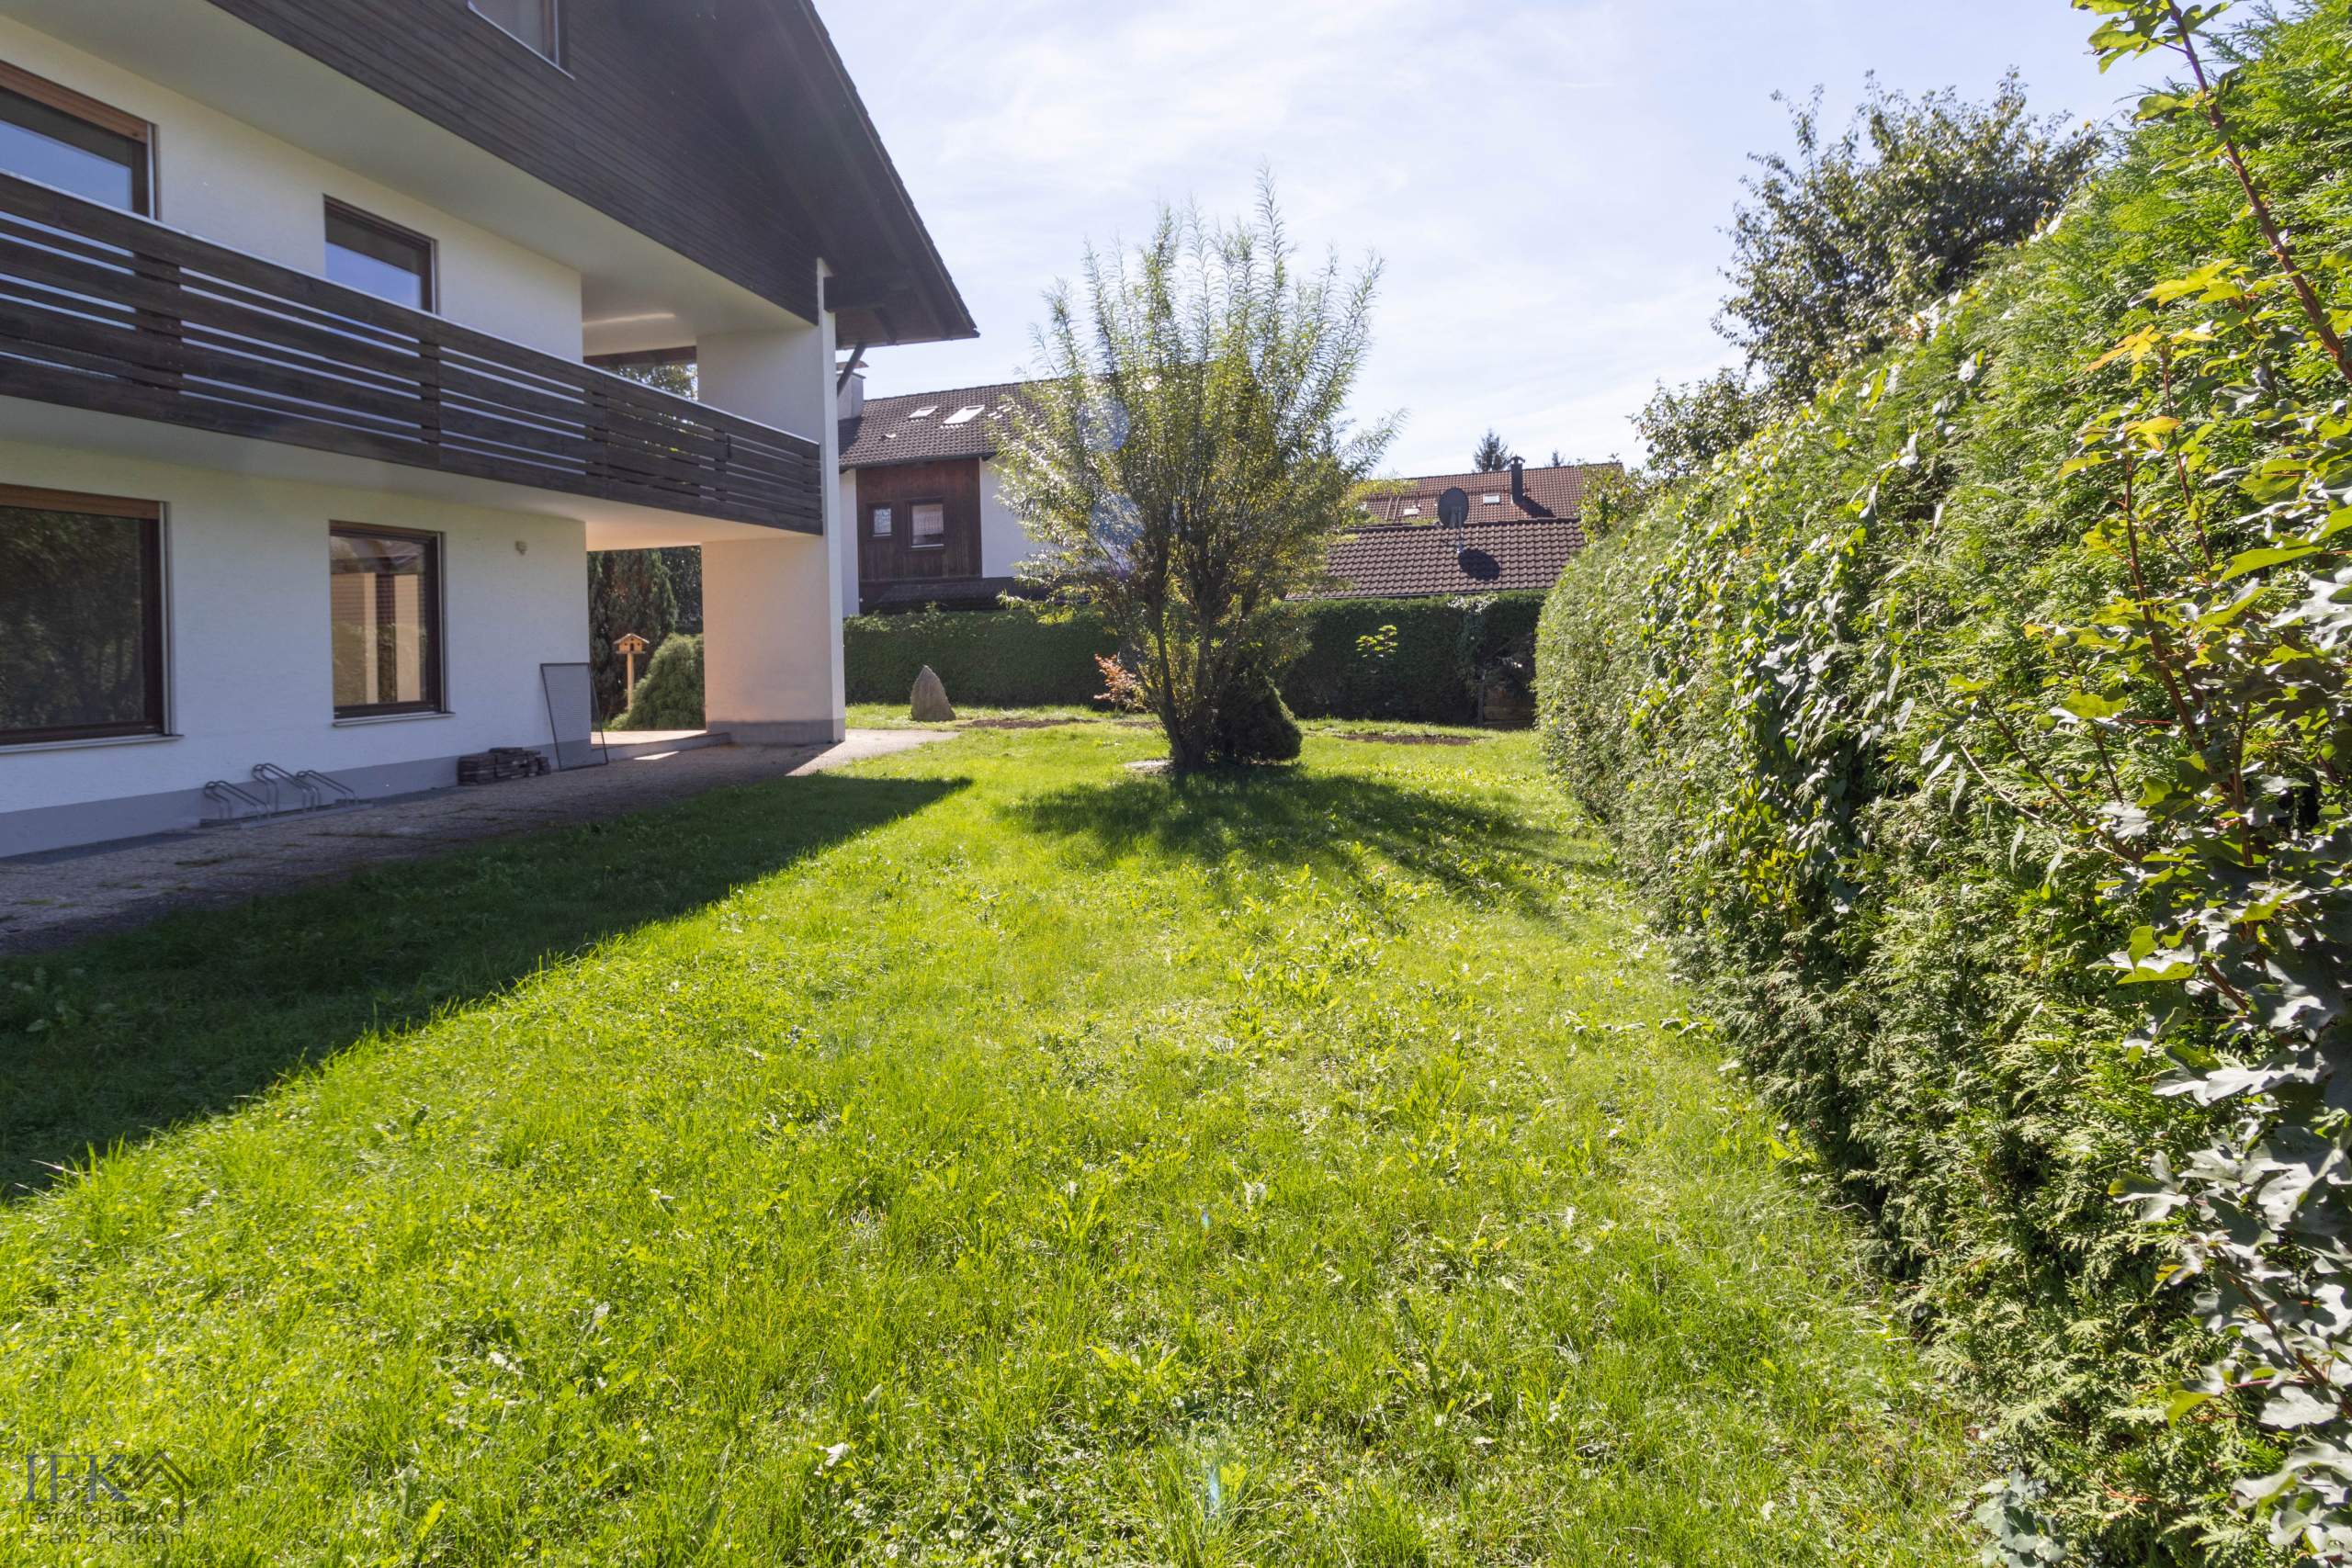 Großes, befristet vermietetes 3-Familienhaus in Bestlage von Weilheim - Garten West